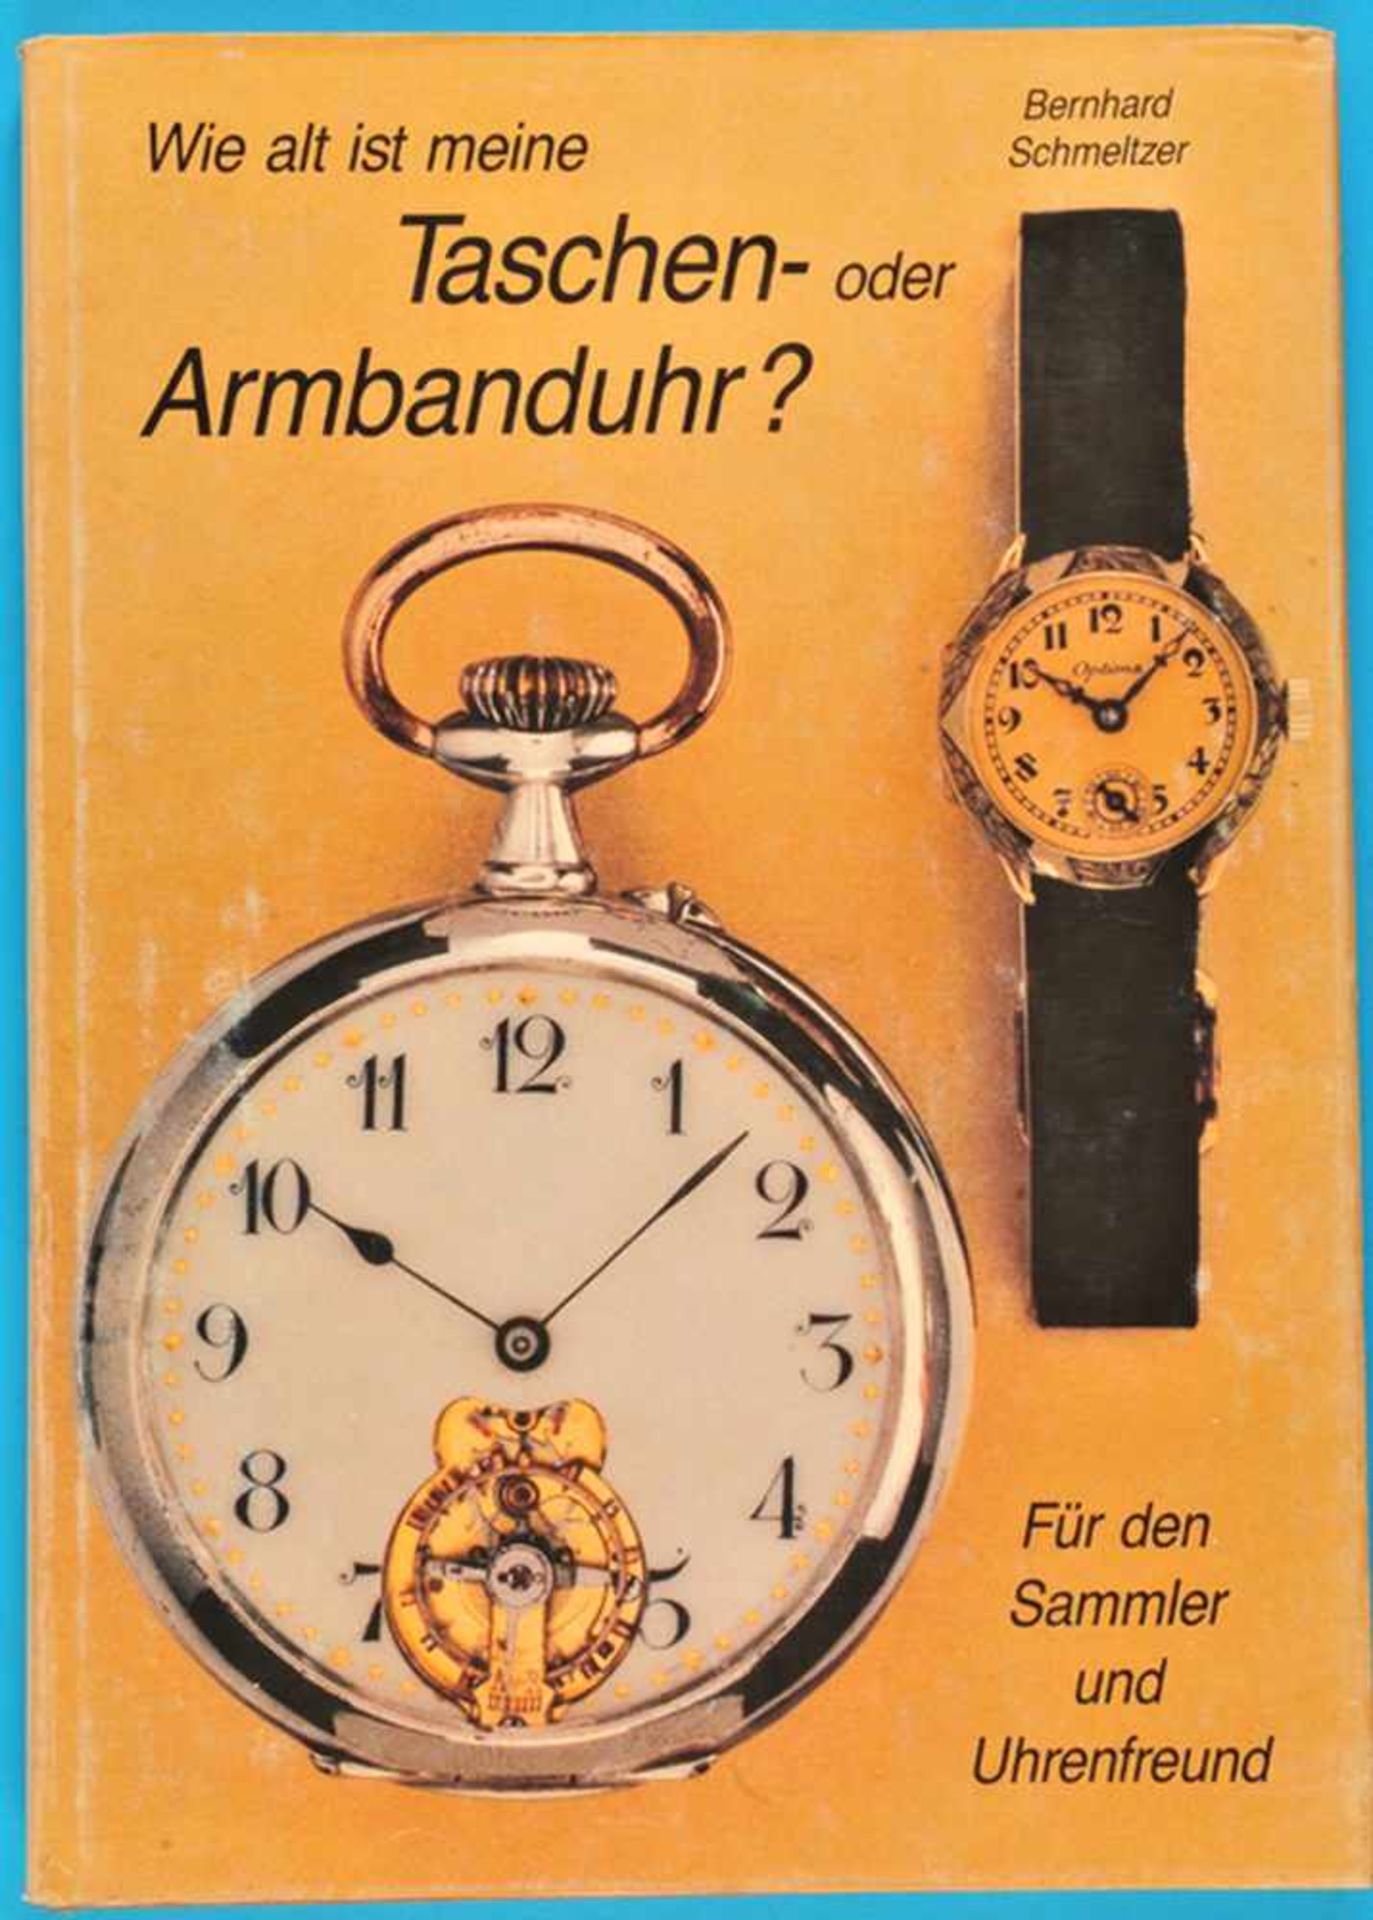 Bernhard Schmeltzer, Wie alt ist meine Taschenoder Armbanduhr? Für den Sammler und Uhrenfreund,